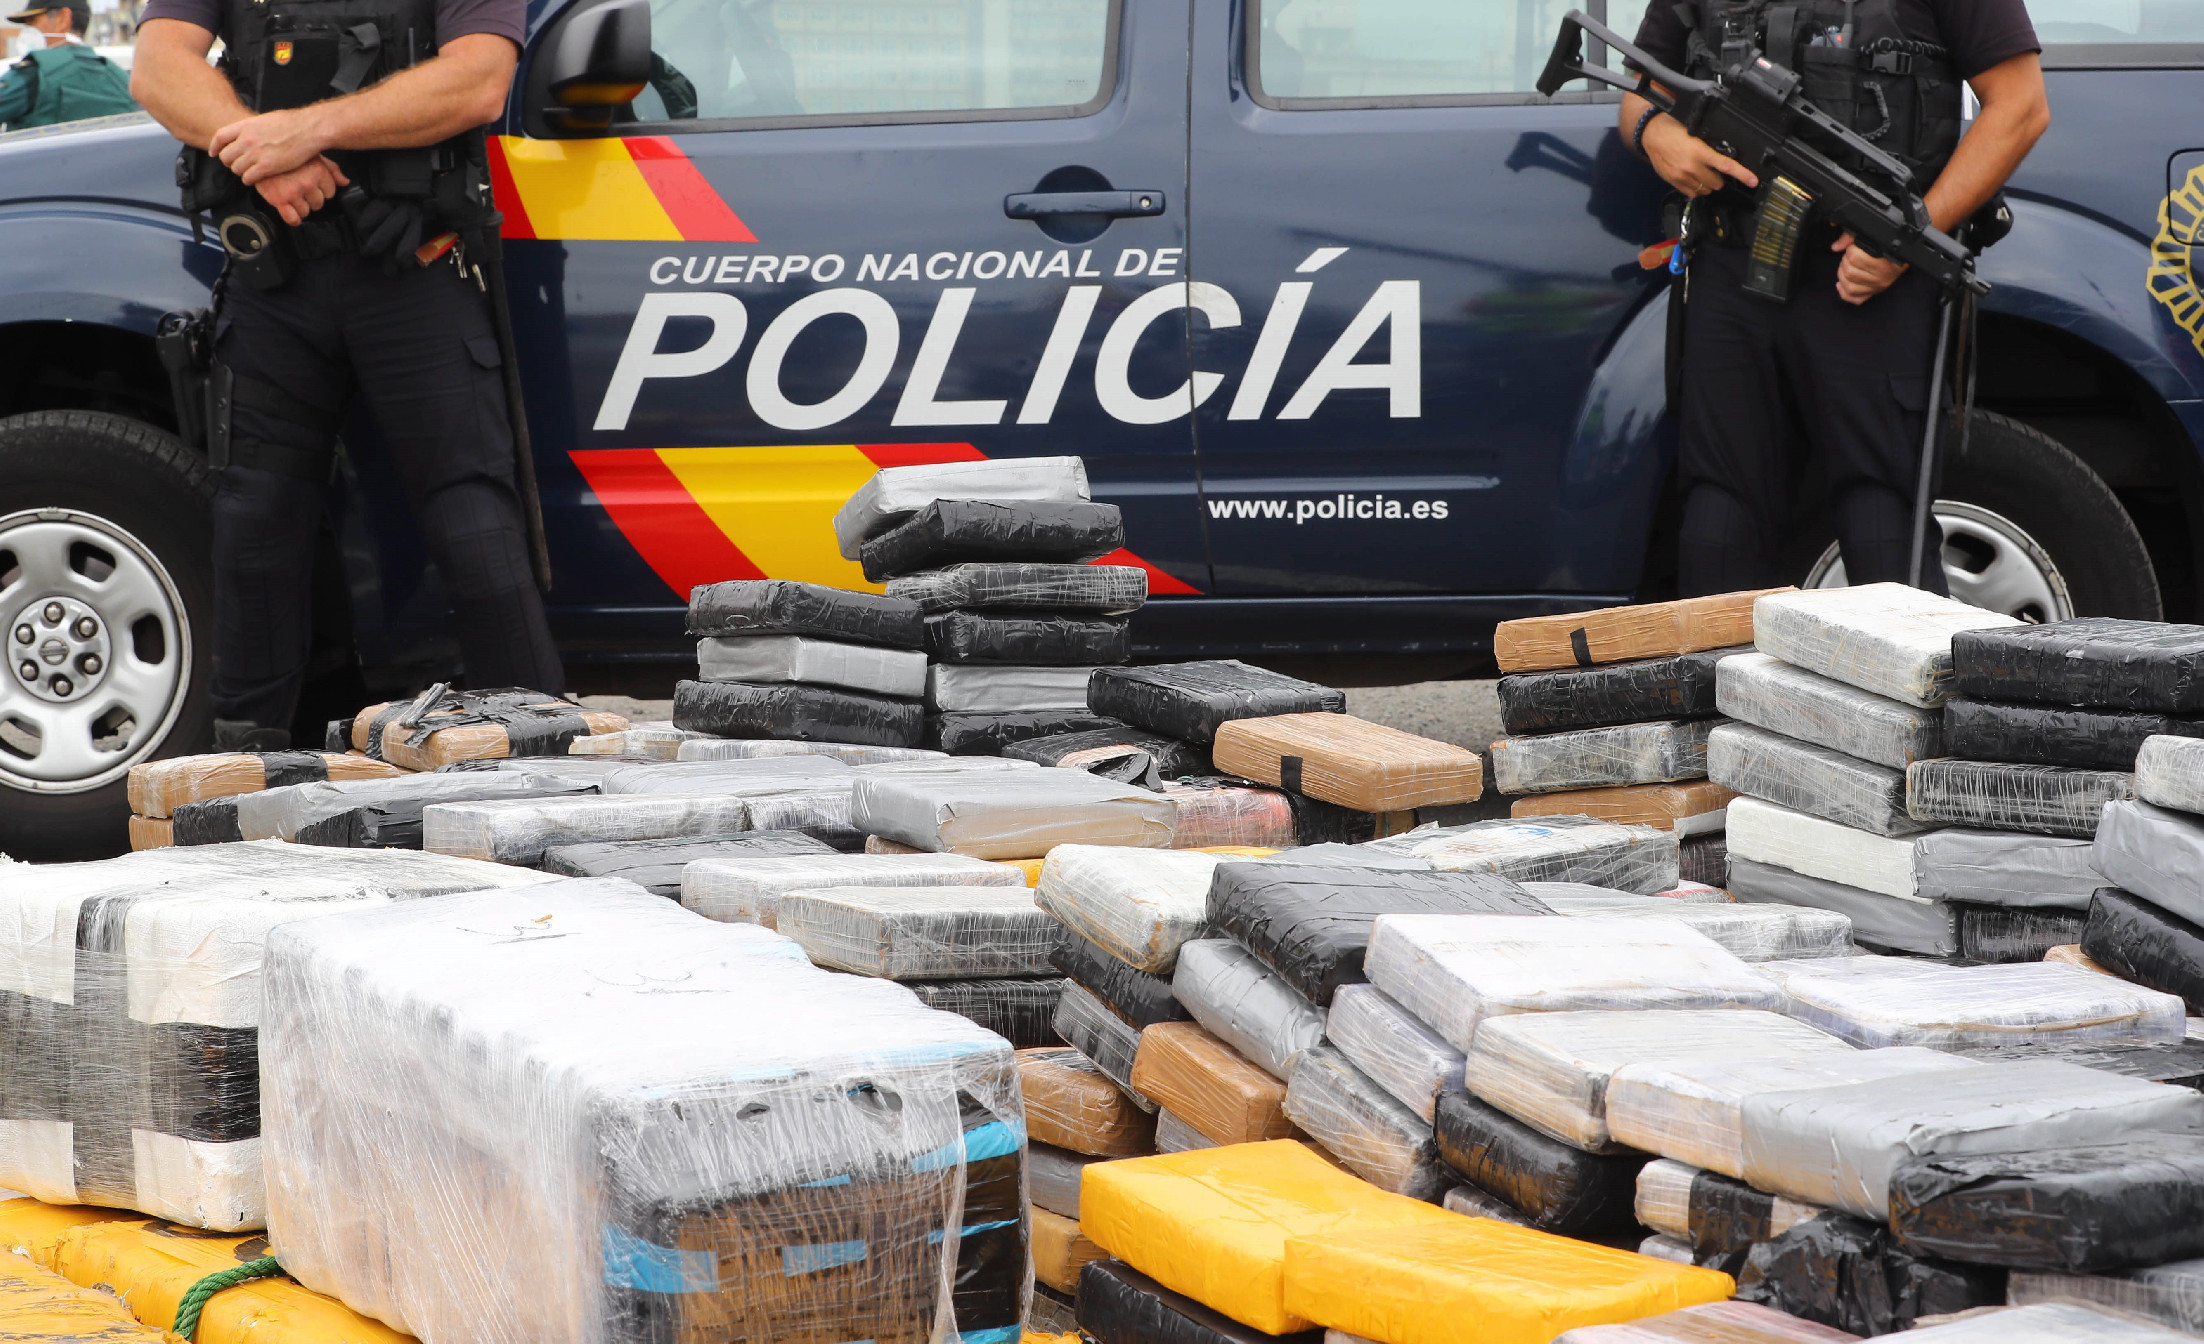 Lecsaptak a kartellre, eltűnhet a kokain harmada az európai drogpiacról